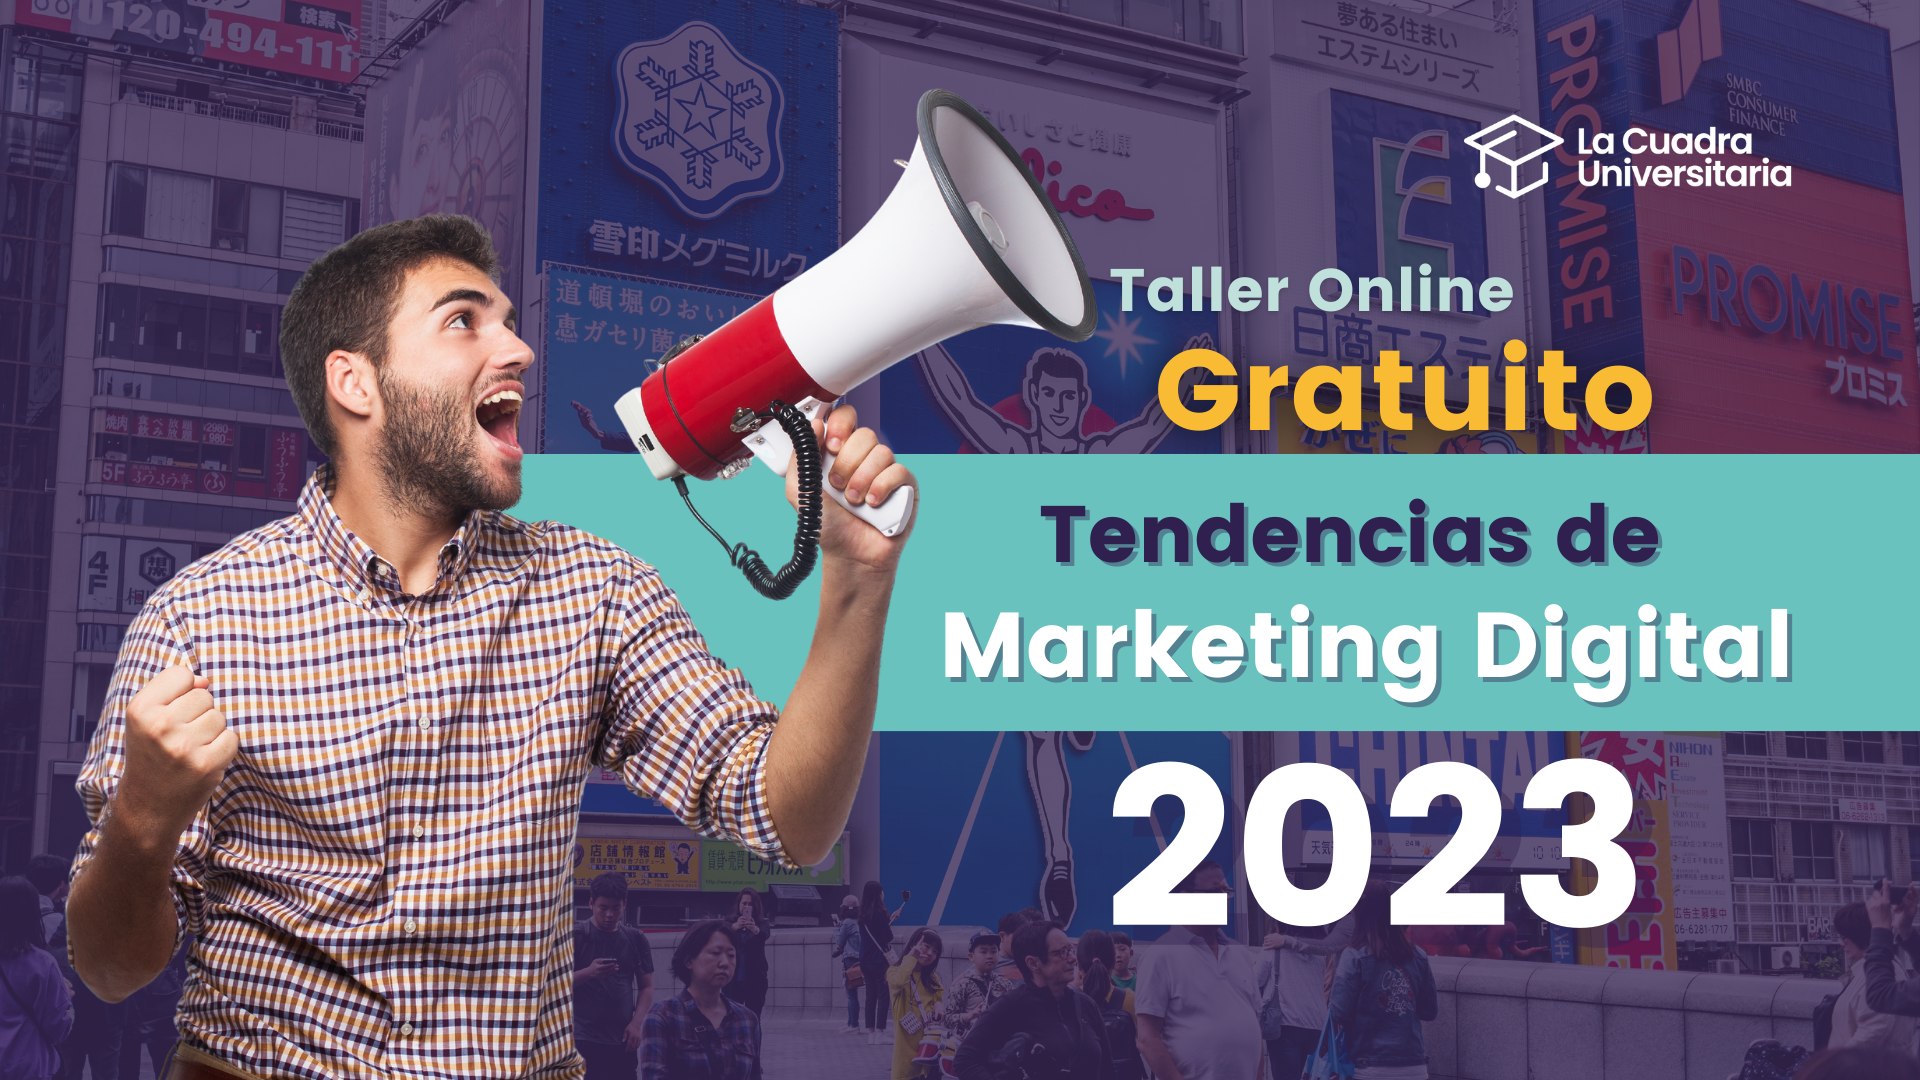 Taller online “Tendencias de Marketing Digital 2023”